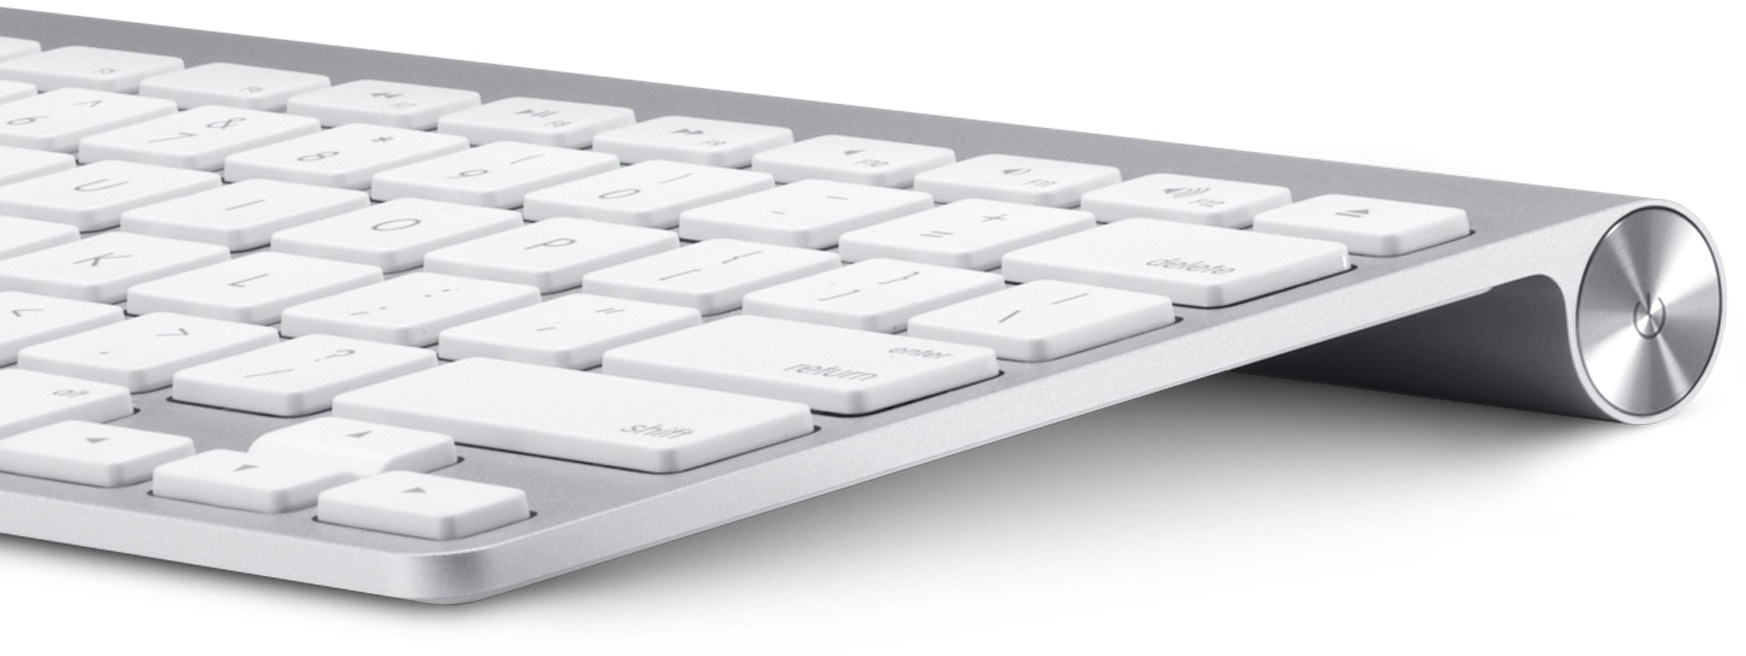 Apple Wireless Keyboard image 002